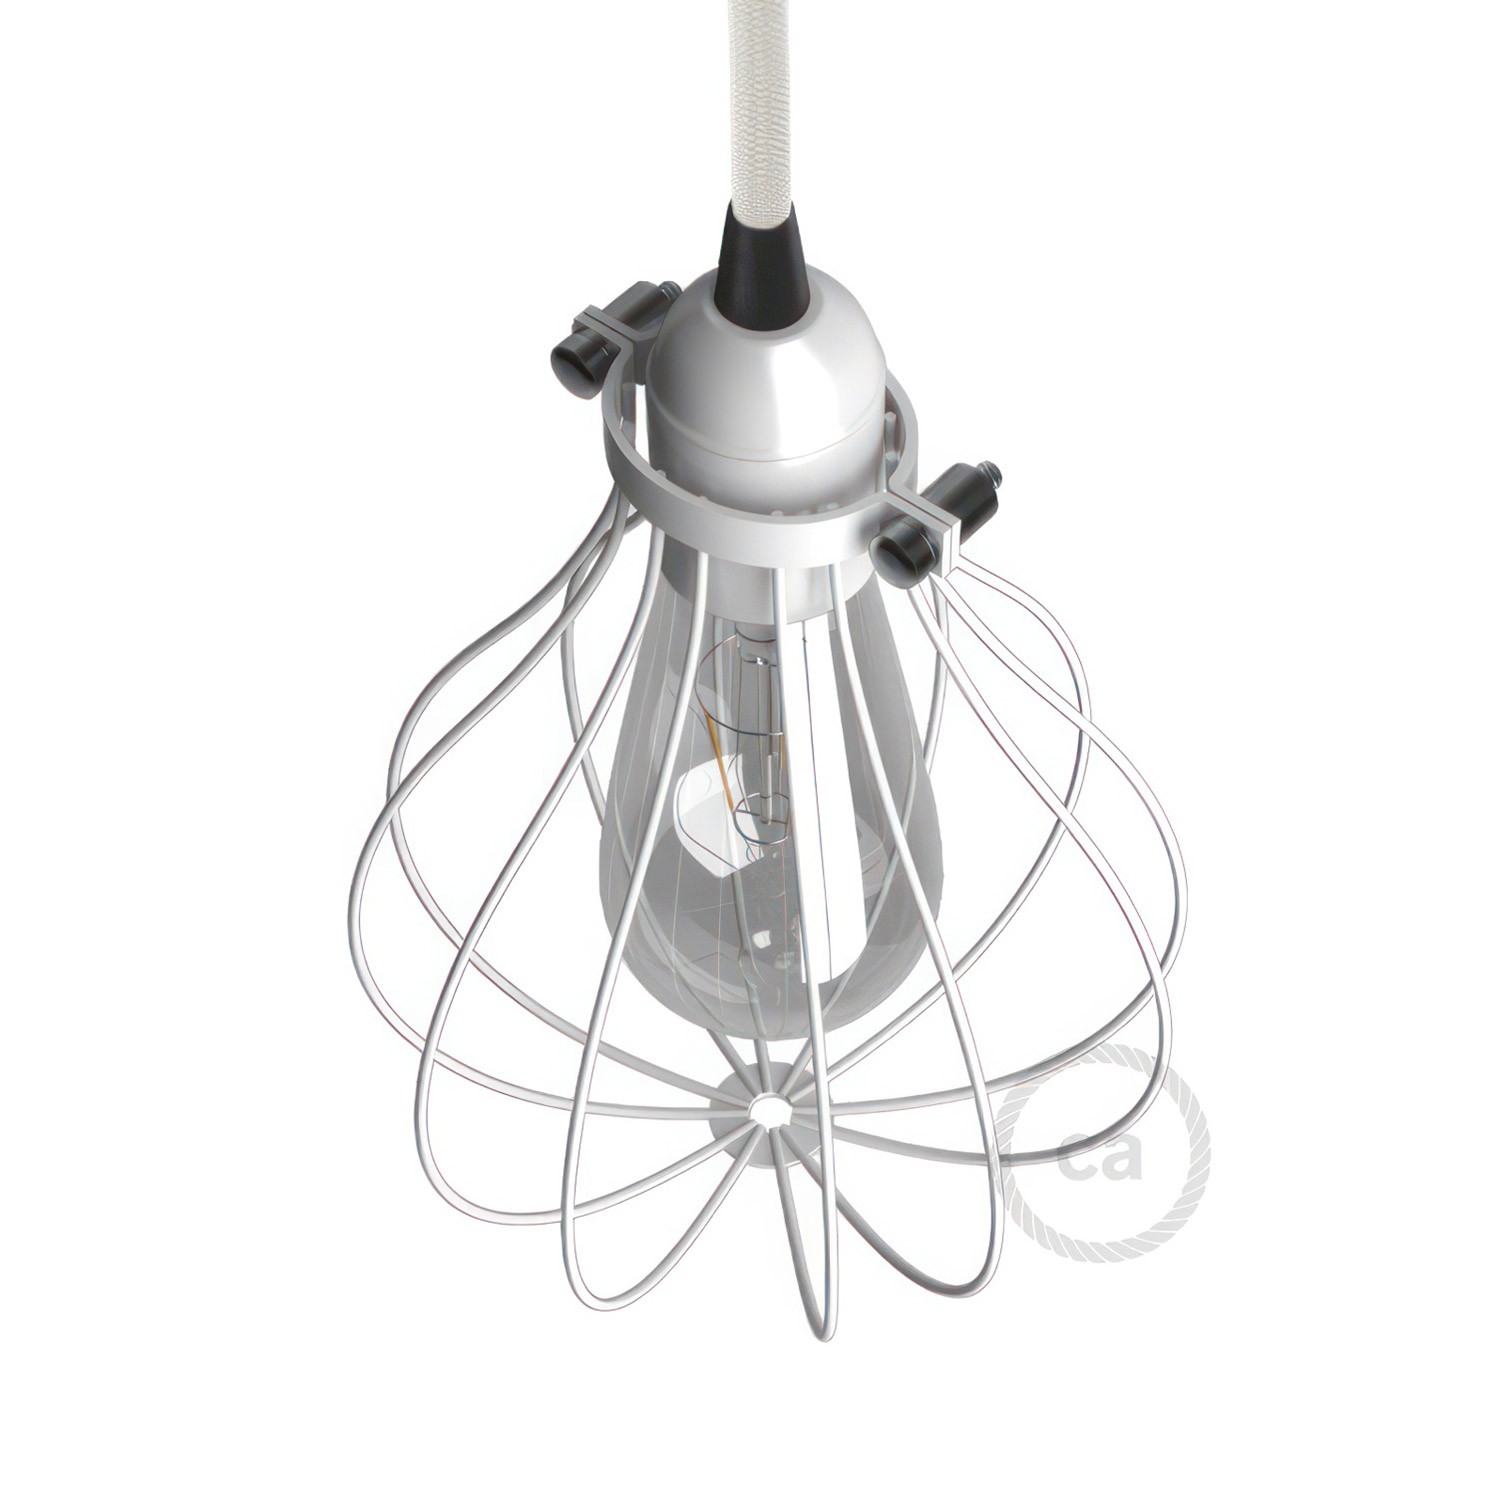 Tropfenförmiger Käfig-Lampenschirm aus Metall mit verstellbarem Verschluss